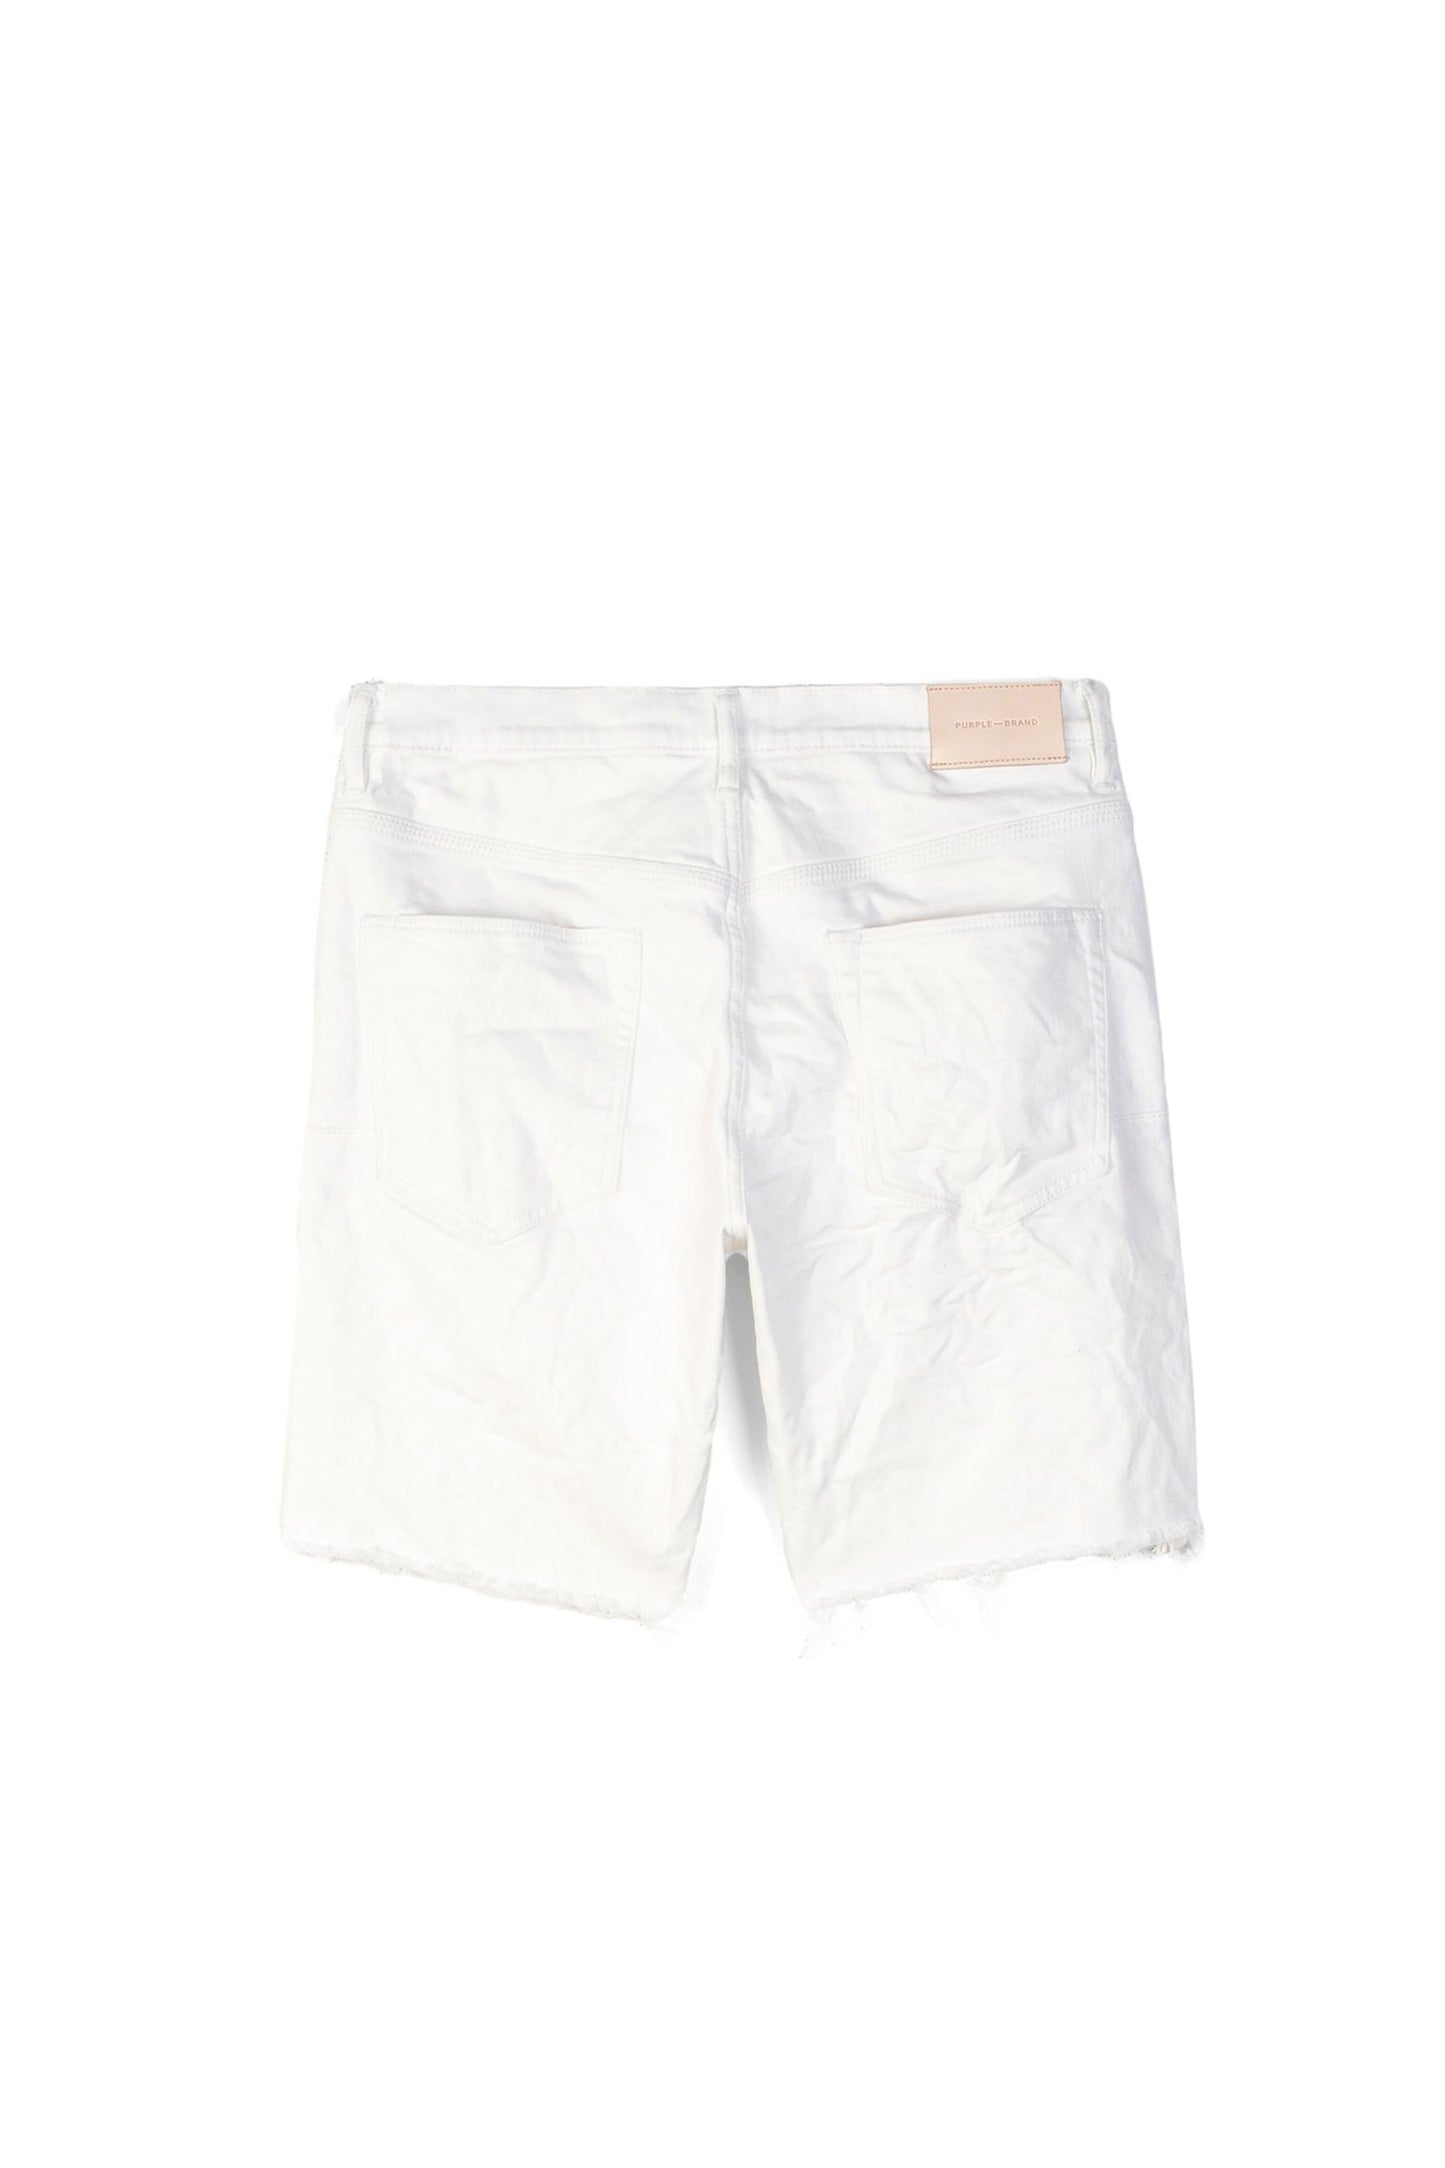 PURPLE BRAND - Men's Denim Jean Short - Mid Rise Short - Style No. P020 - Grosgrain Tuxedo Stripe White - Back